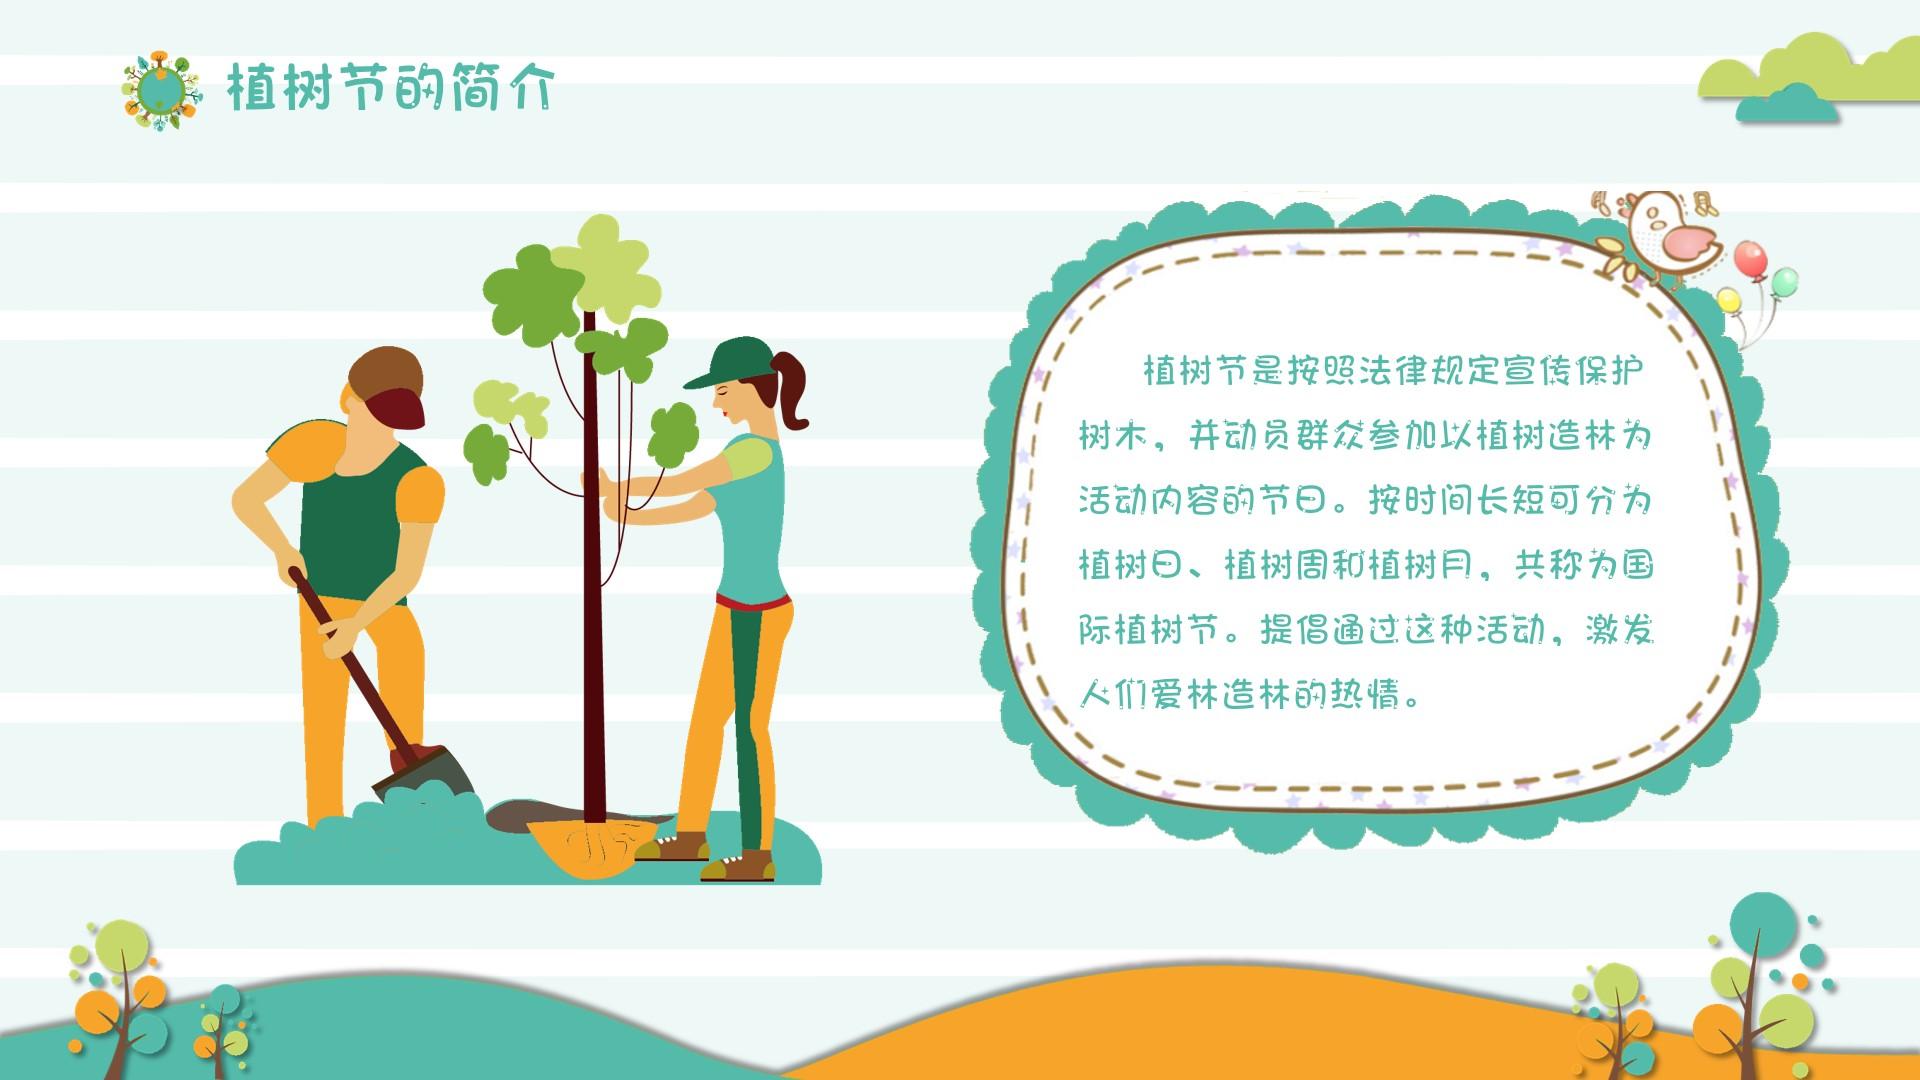 教育教学橙色白色卡通植树节活动植树保护群众云素材PPT模板1672554297995